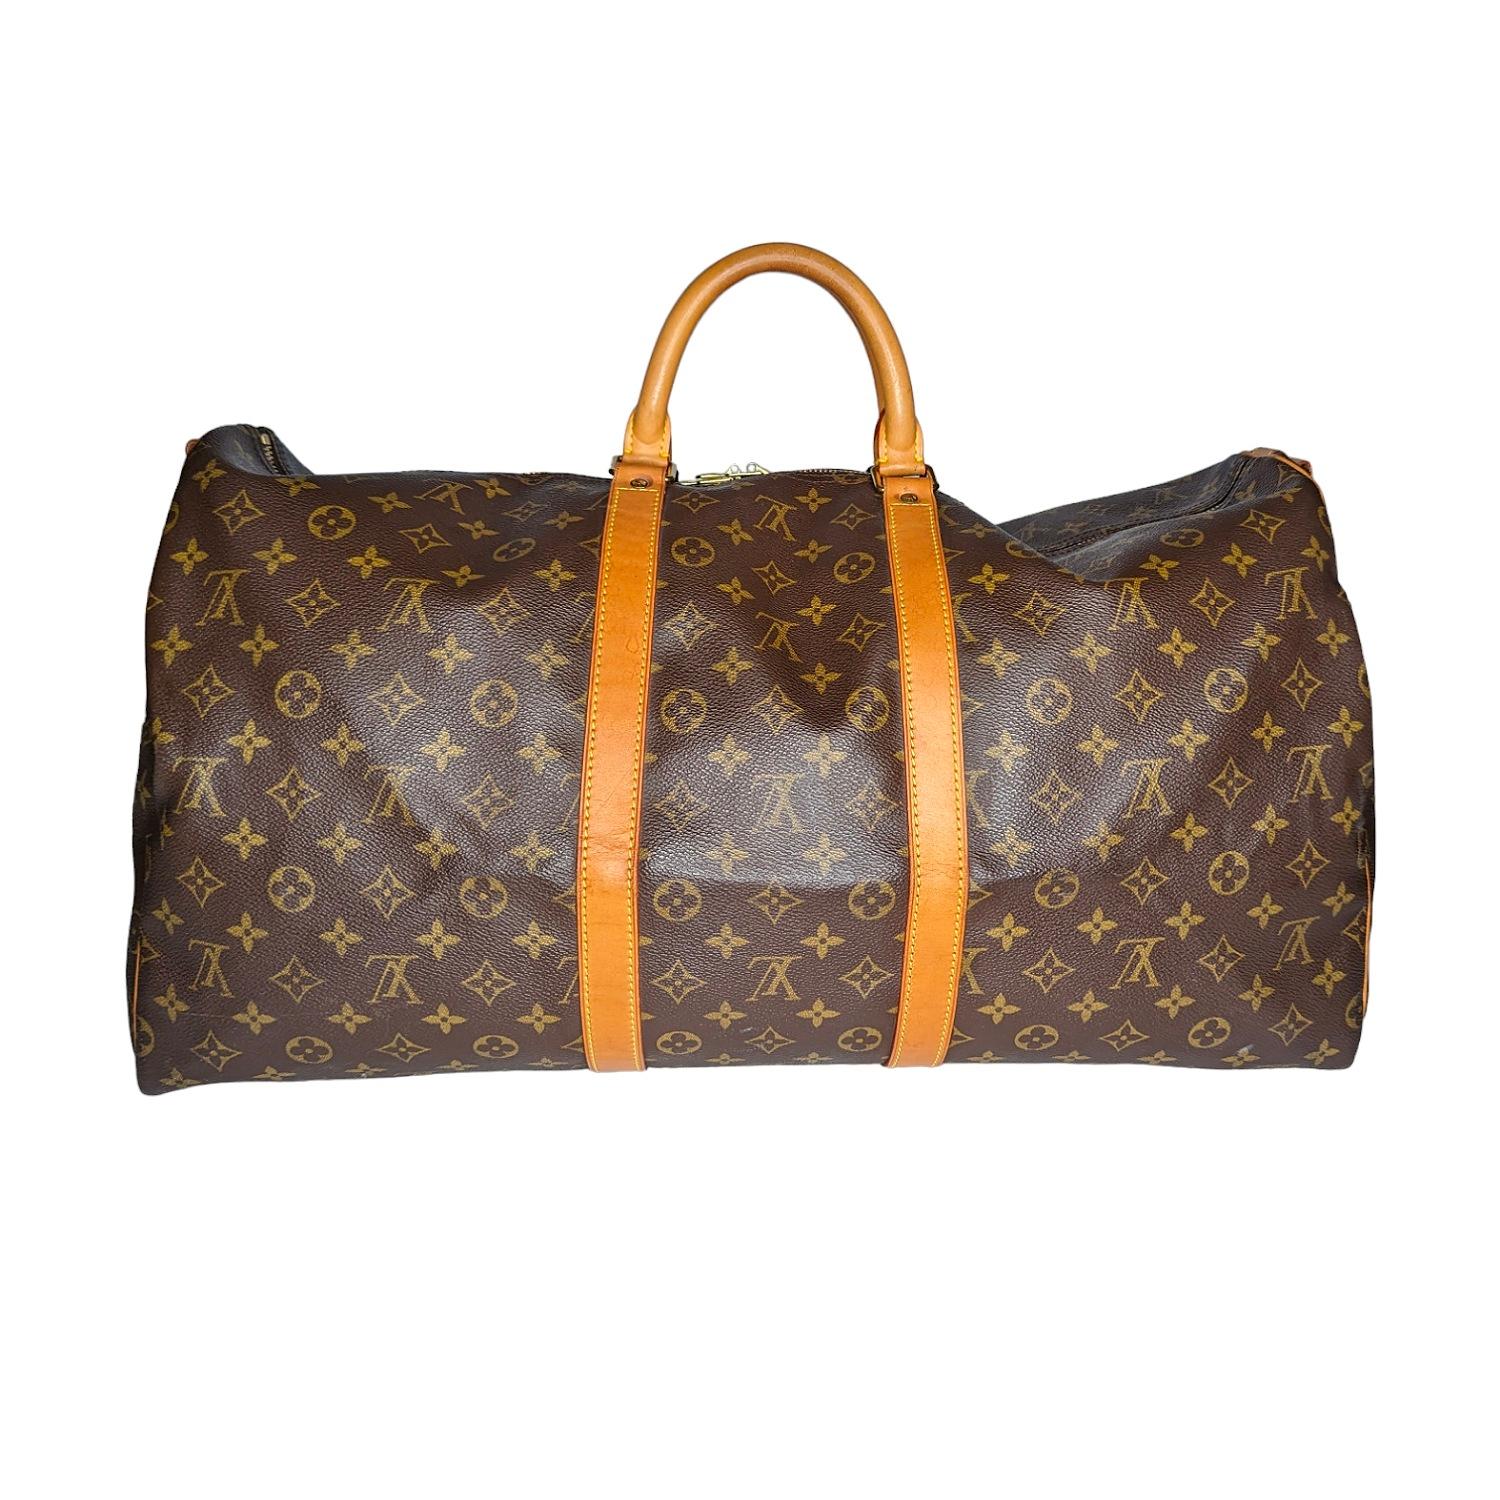 Ce sac de sport vintage est réalisé avec le monogramme Louis Vuitton sur une toile enduite marron foncé. Le sac est doté d'une sangle et d'une garniture en cuir de vachette vachette, de poignées supérieures roulées et d'une quincaillerie en laiton.